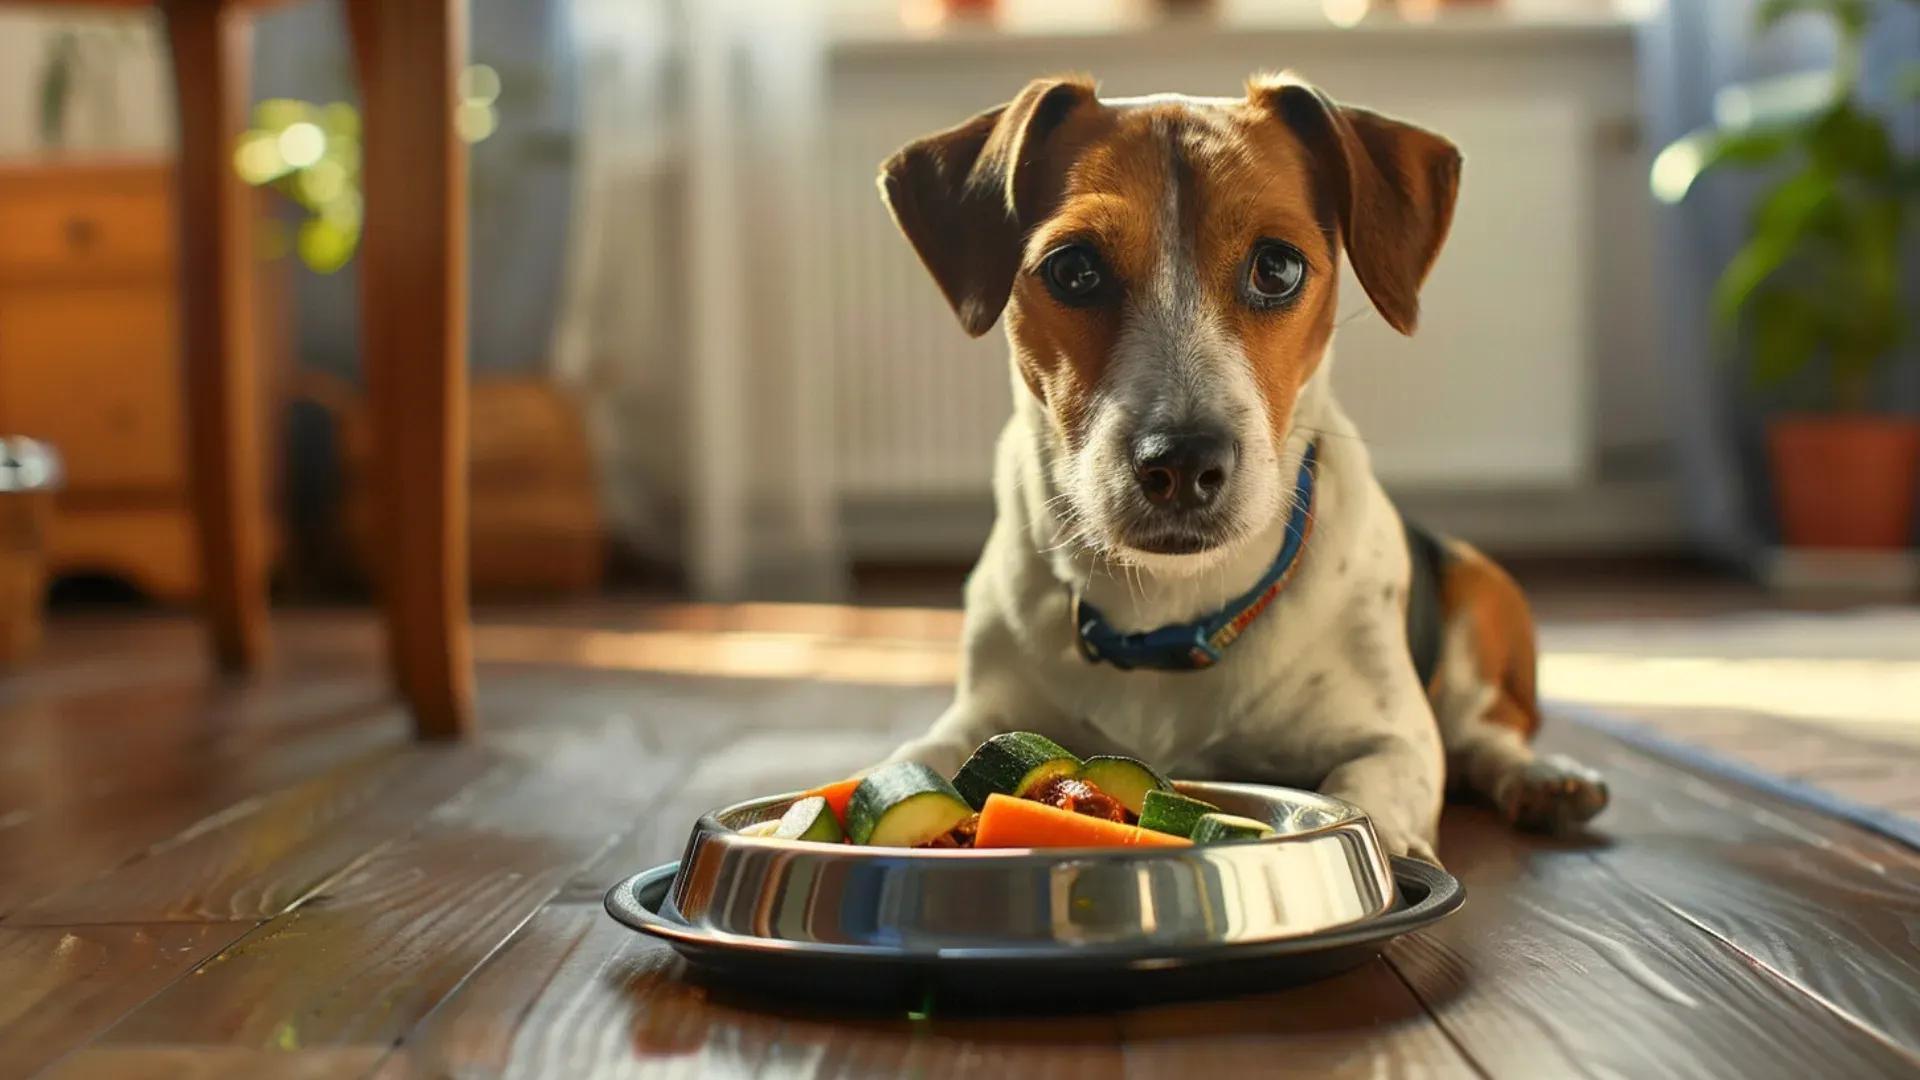 Peut-on donner de la nourriture humaine à son chien ?